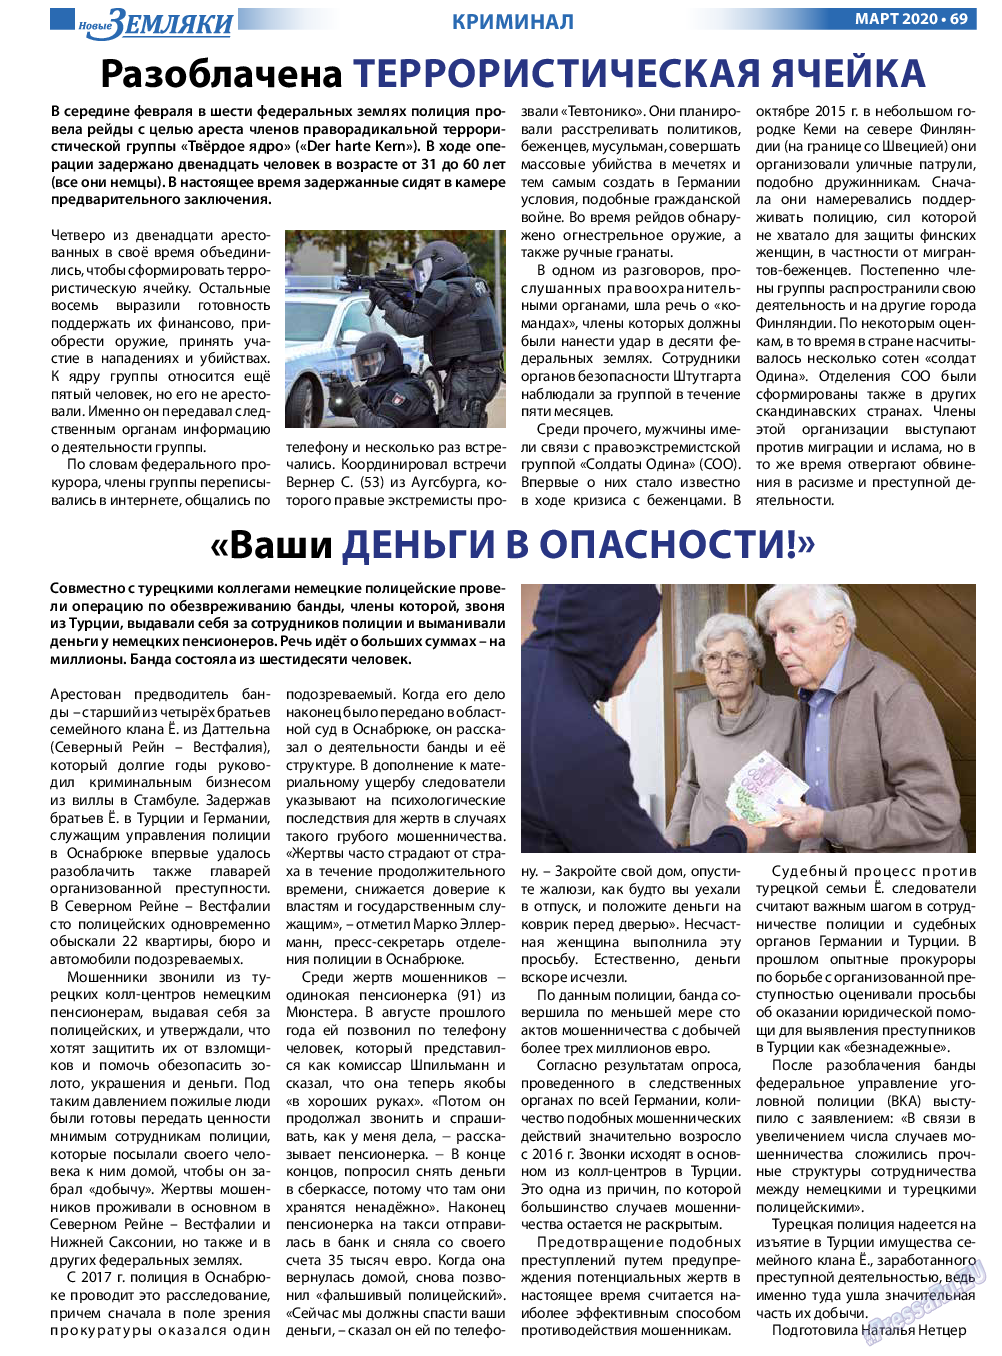 Новые Земляки (газета). 2020 год, номер 3, стр. 69